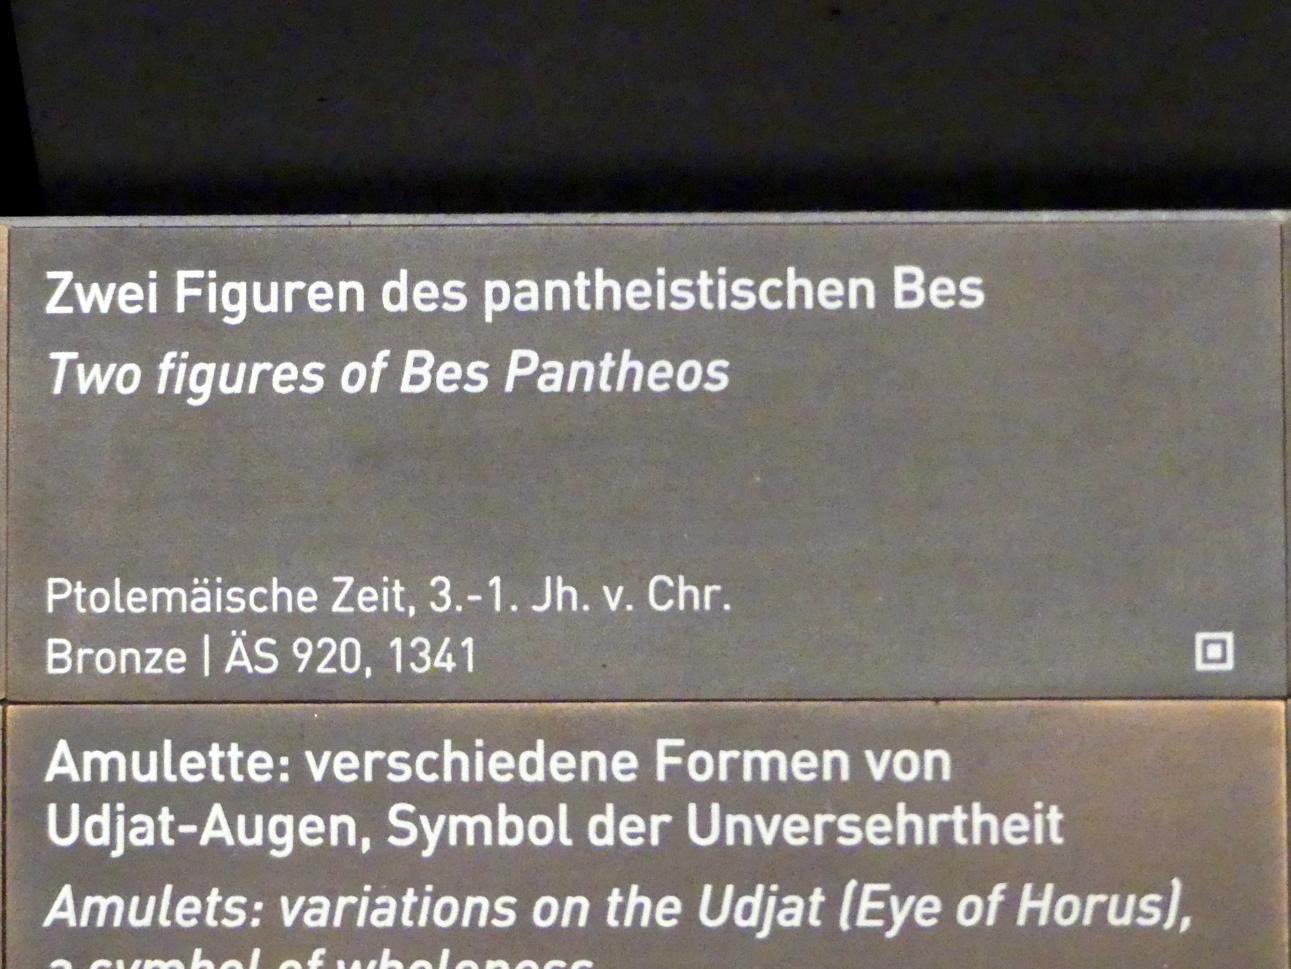 Zwei Figuren des pantheistischen Bes, Ptolemäische Zeit, 400 v. Chr. - 1 n. Chr., 300 - 1 v. Chr., Bild 4/4